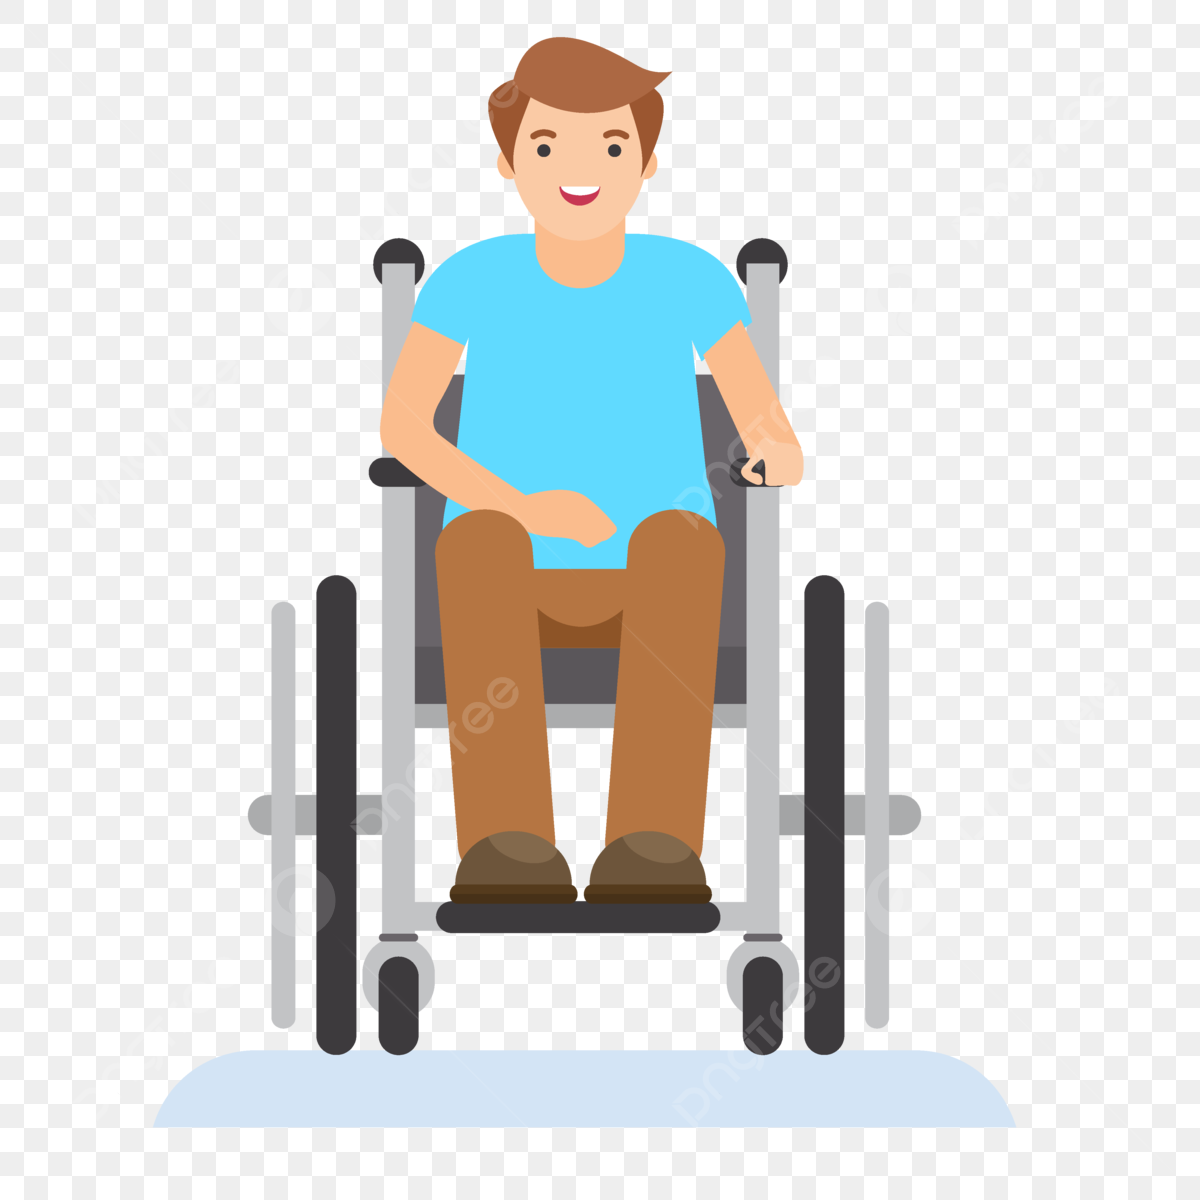 pngtree sada tělesně postižené osoby na invalidním vozíku png image 7712062 - Tajemství výkladu snů